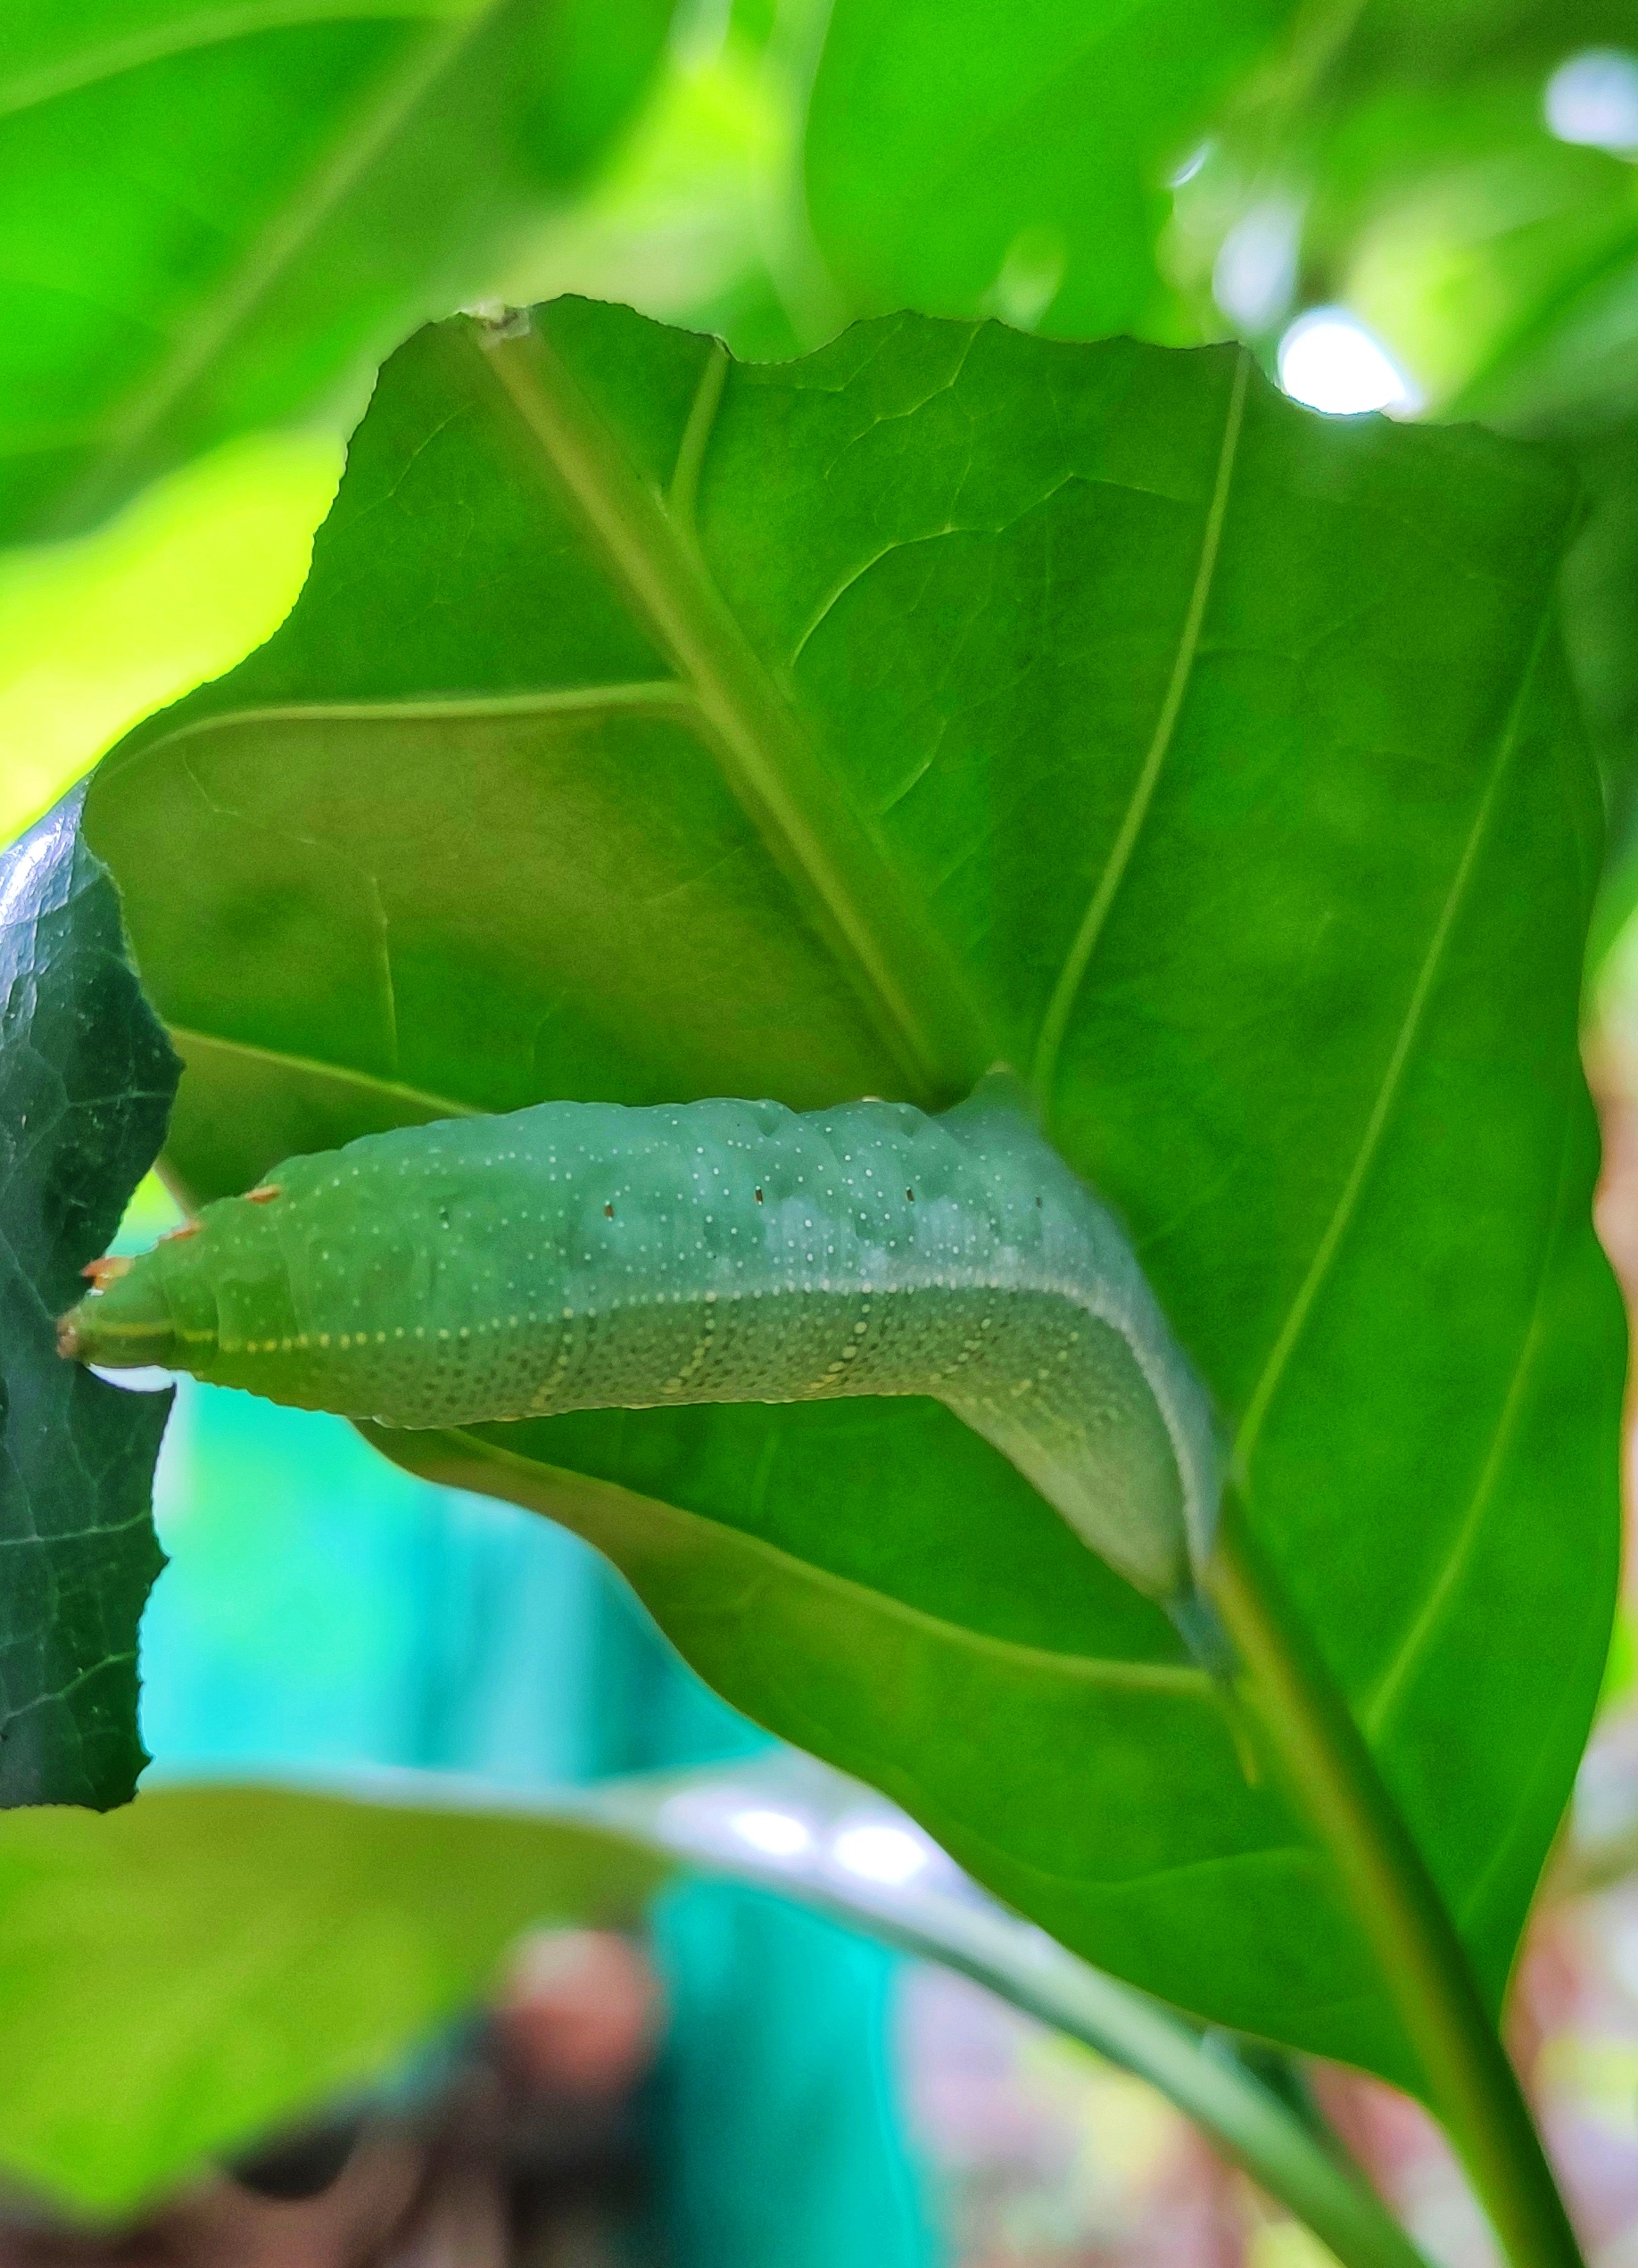 Green caterpillar under a leaf